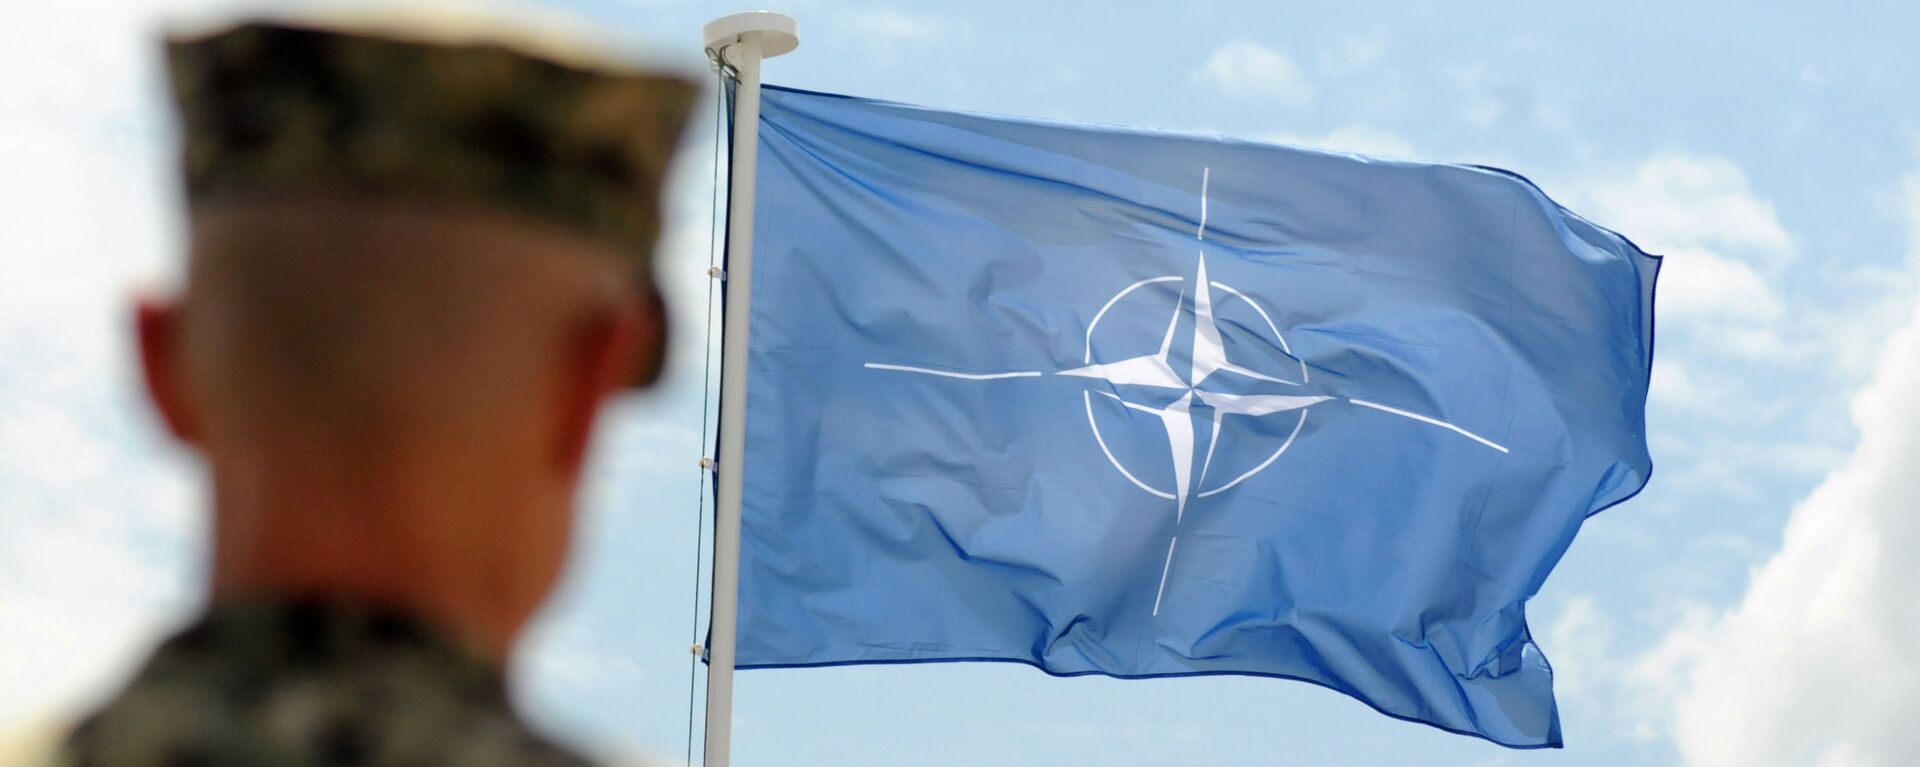 Военнослужащий НАТО на фоне флага НАТО в Косово - Sputnik 日本, 1920, 17.12.2021